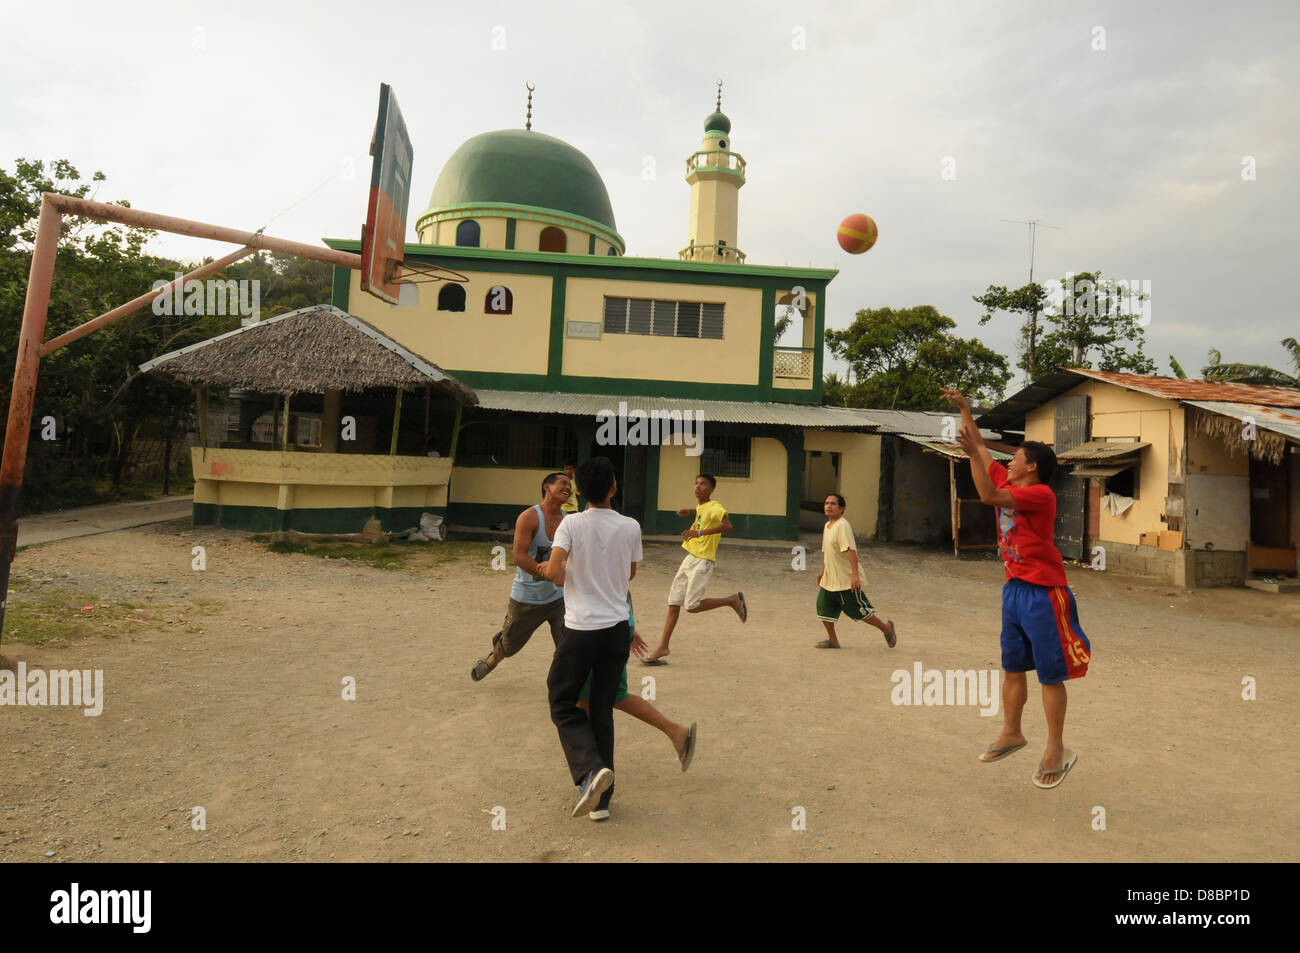 Philippinische Männer spielen Basketball auf dem Hinterhof in der Nähe einer Moschee in der Küstenstadt Puerto Galera. Insel Mindoro, Philippinen Stockfoto